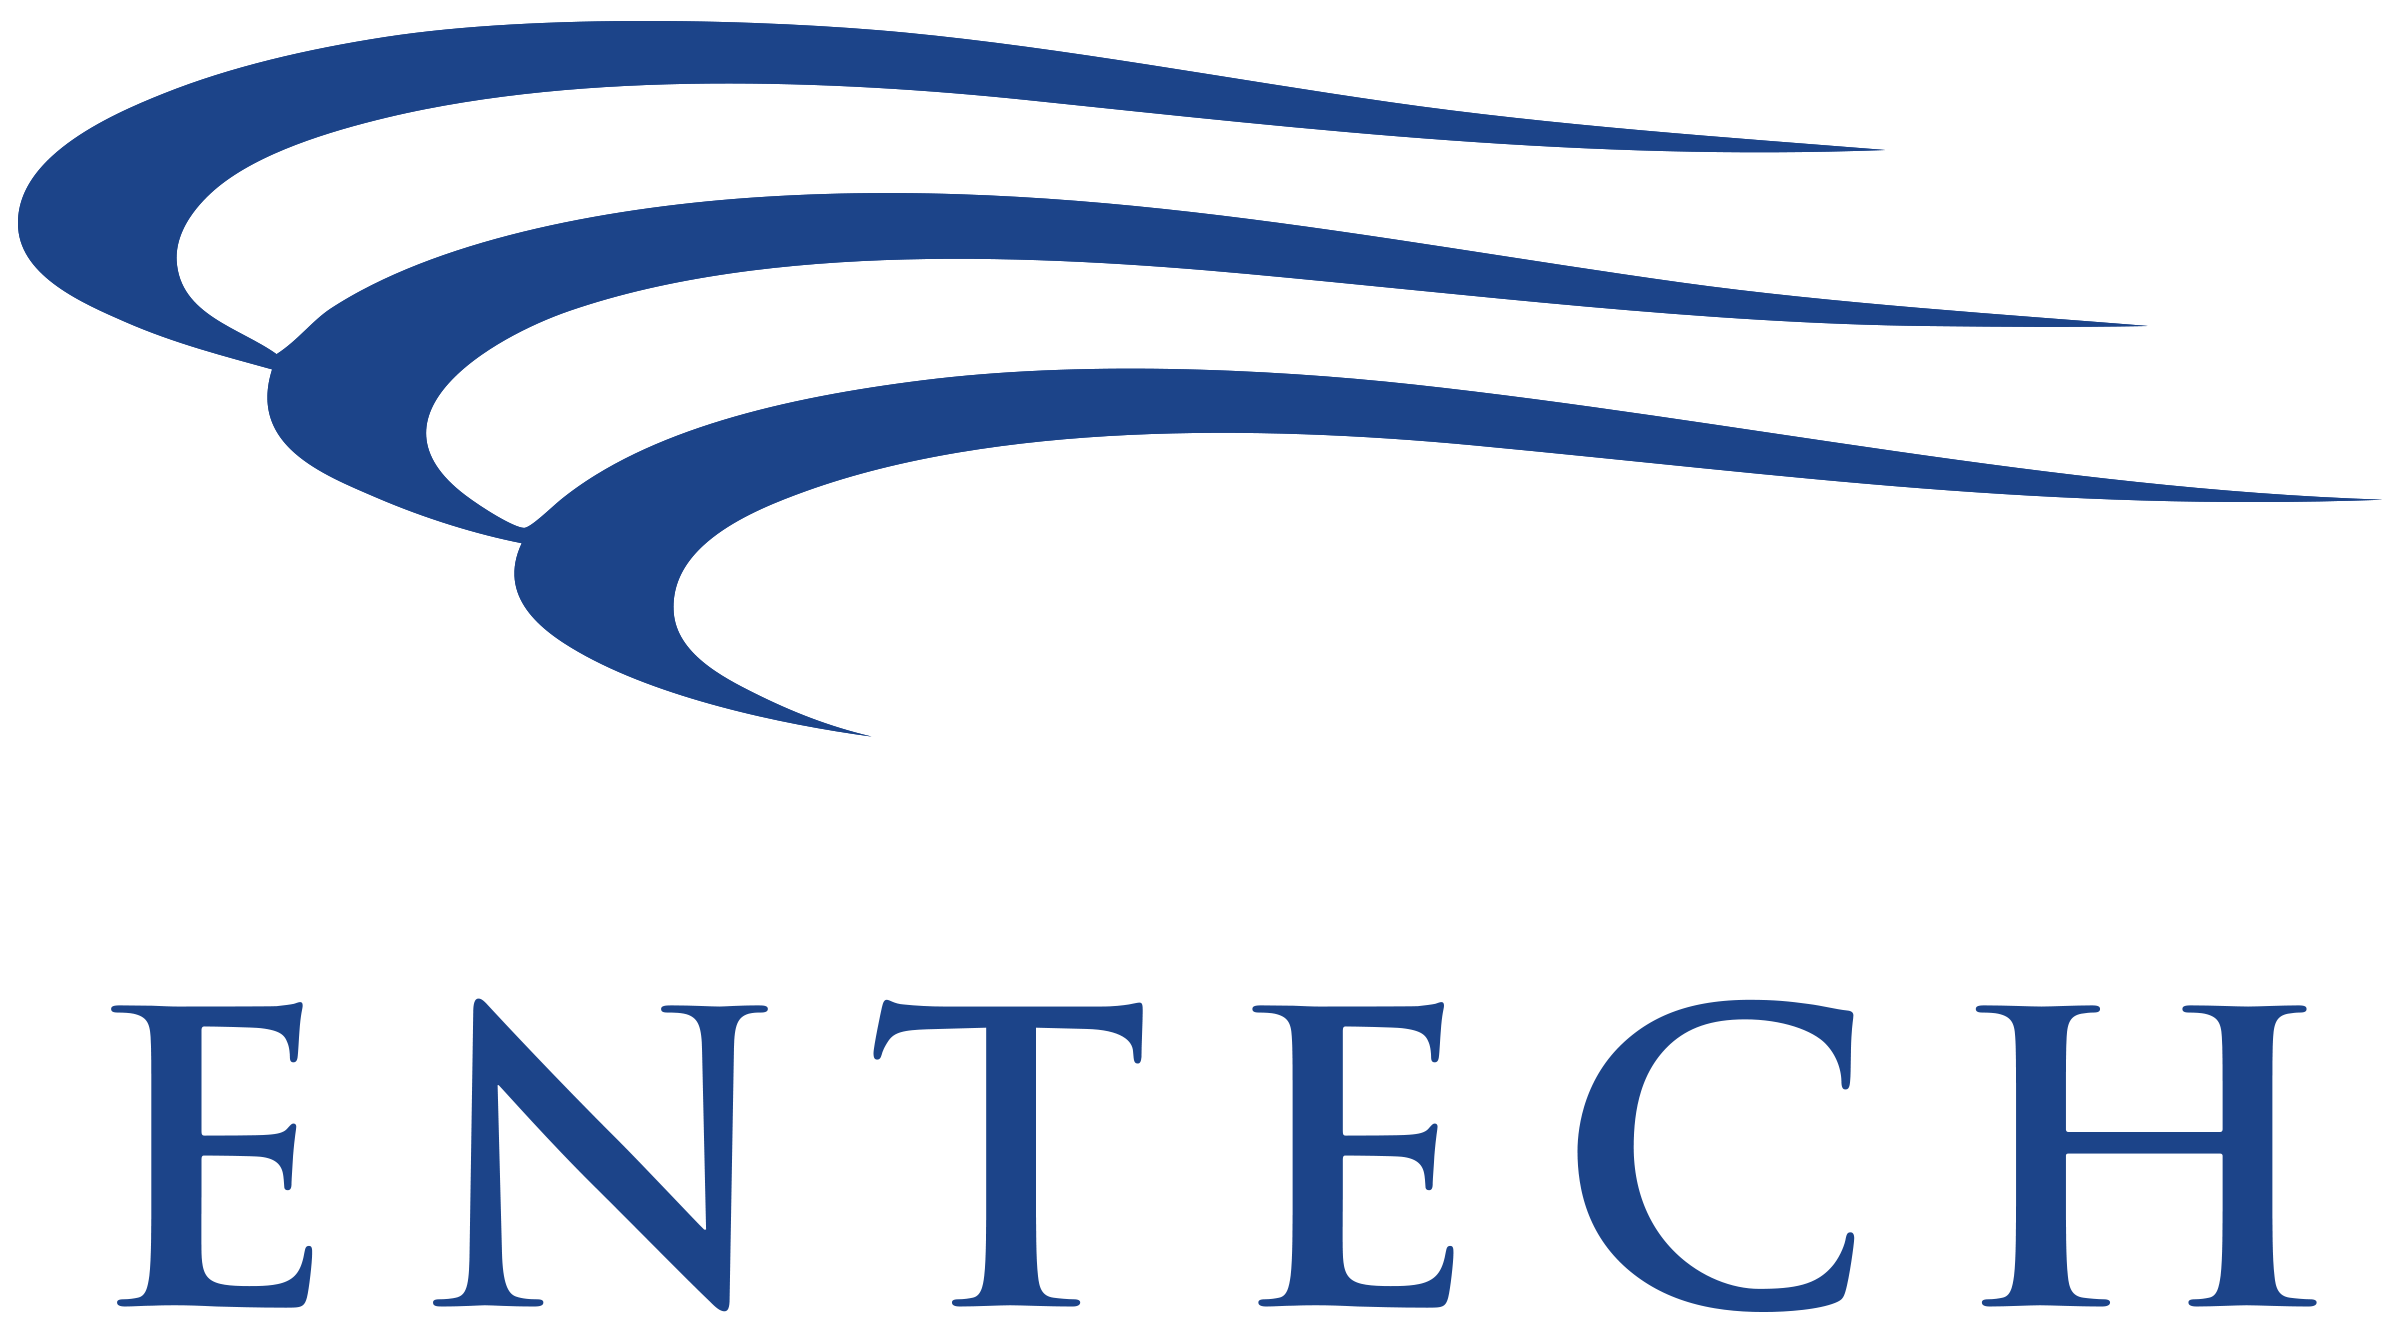 Entech logo